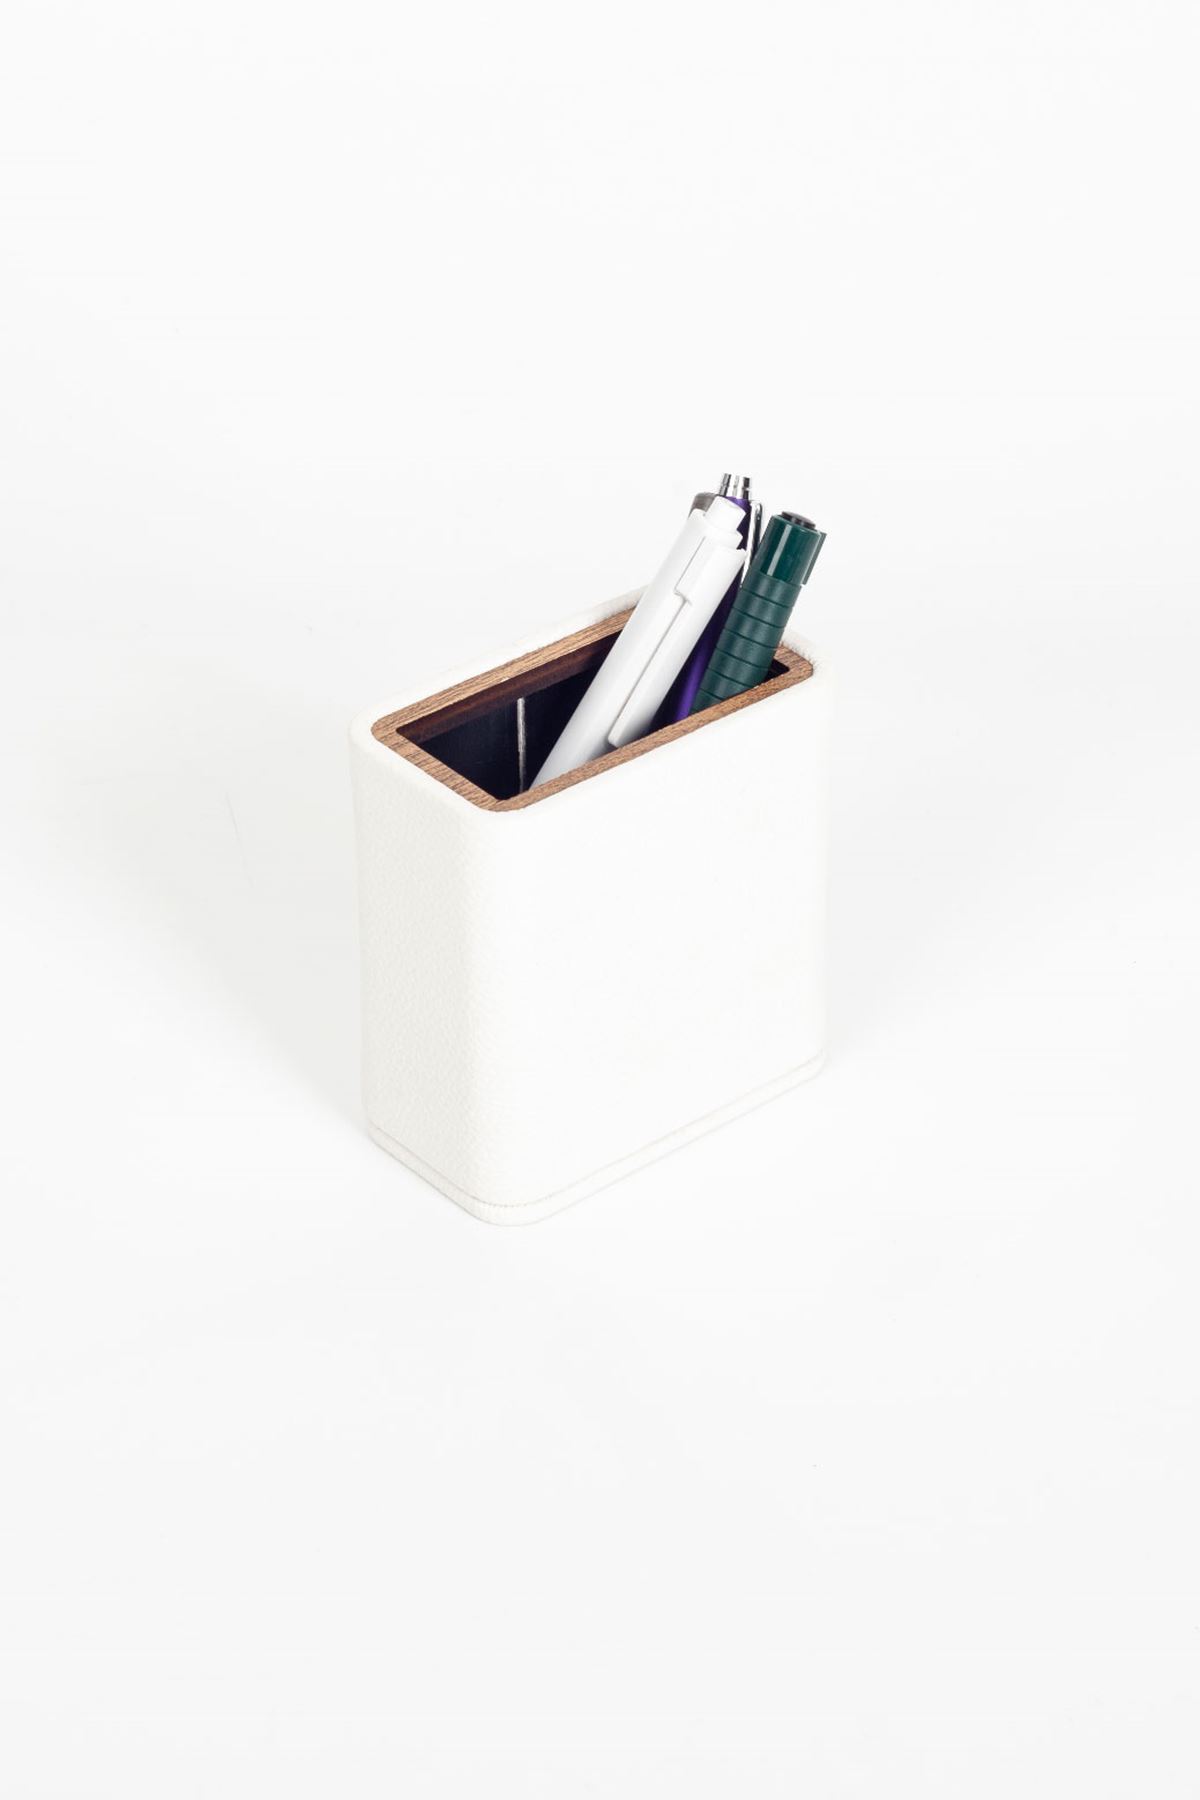 Desktop Leather Wooden Detailed Pen Holder White